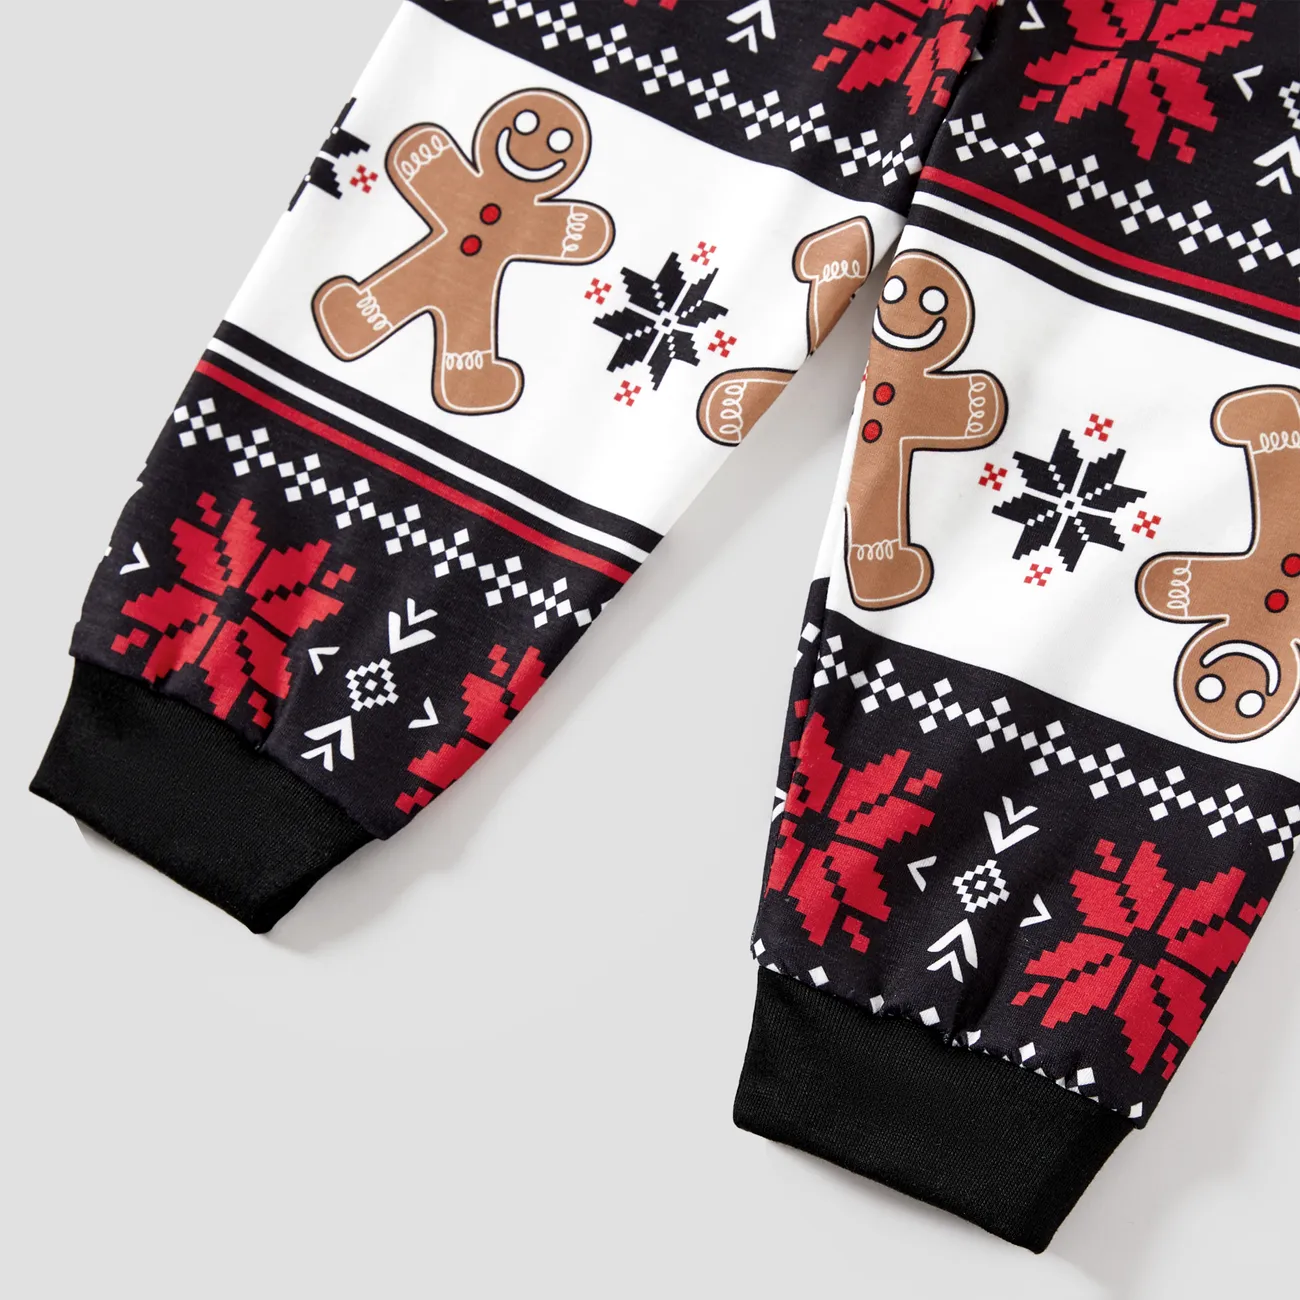 Weihnachten Familien-Looks Kurzärmelig Familien-Outfits Pyjamas (Flame Resistant) schwarz big image 1